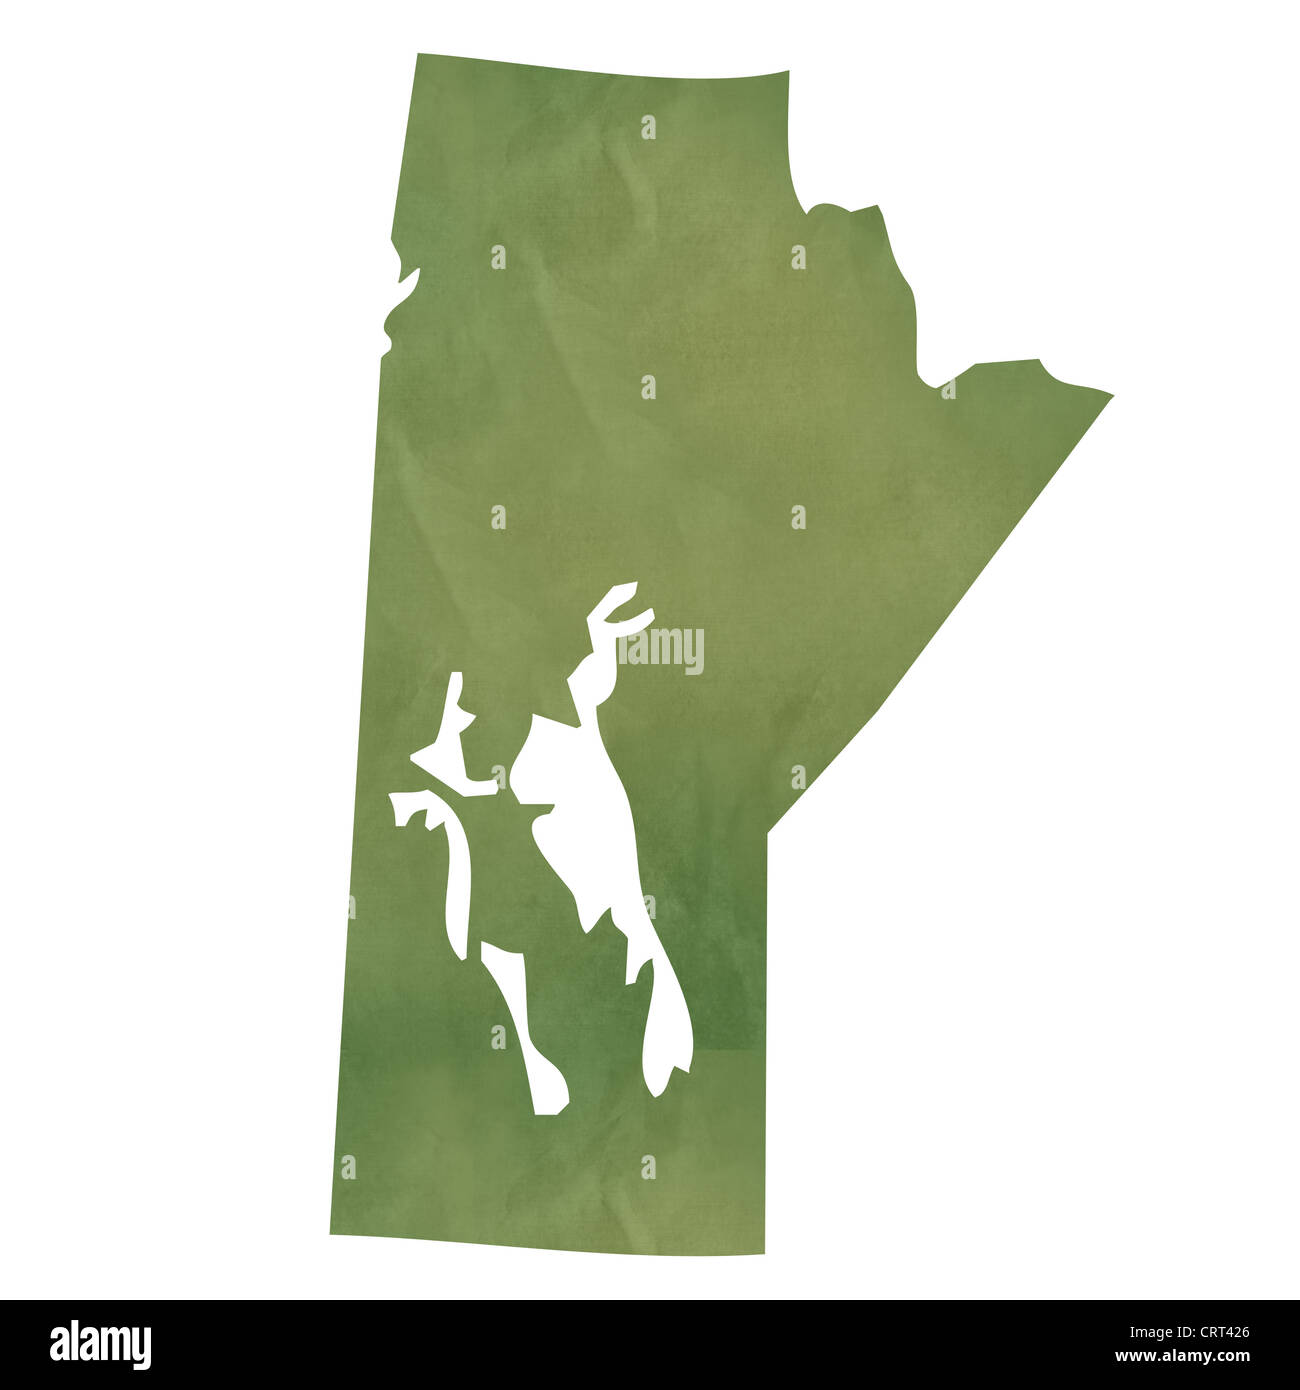 Manitoba Provincia del Canada mappa in vecchio libro verde isolato su sfondo bianco. Foto Stock